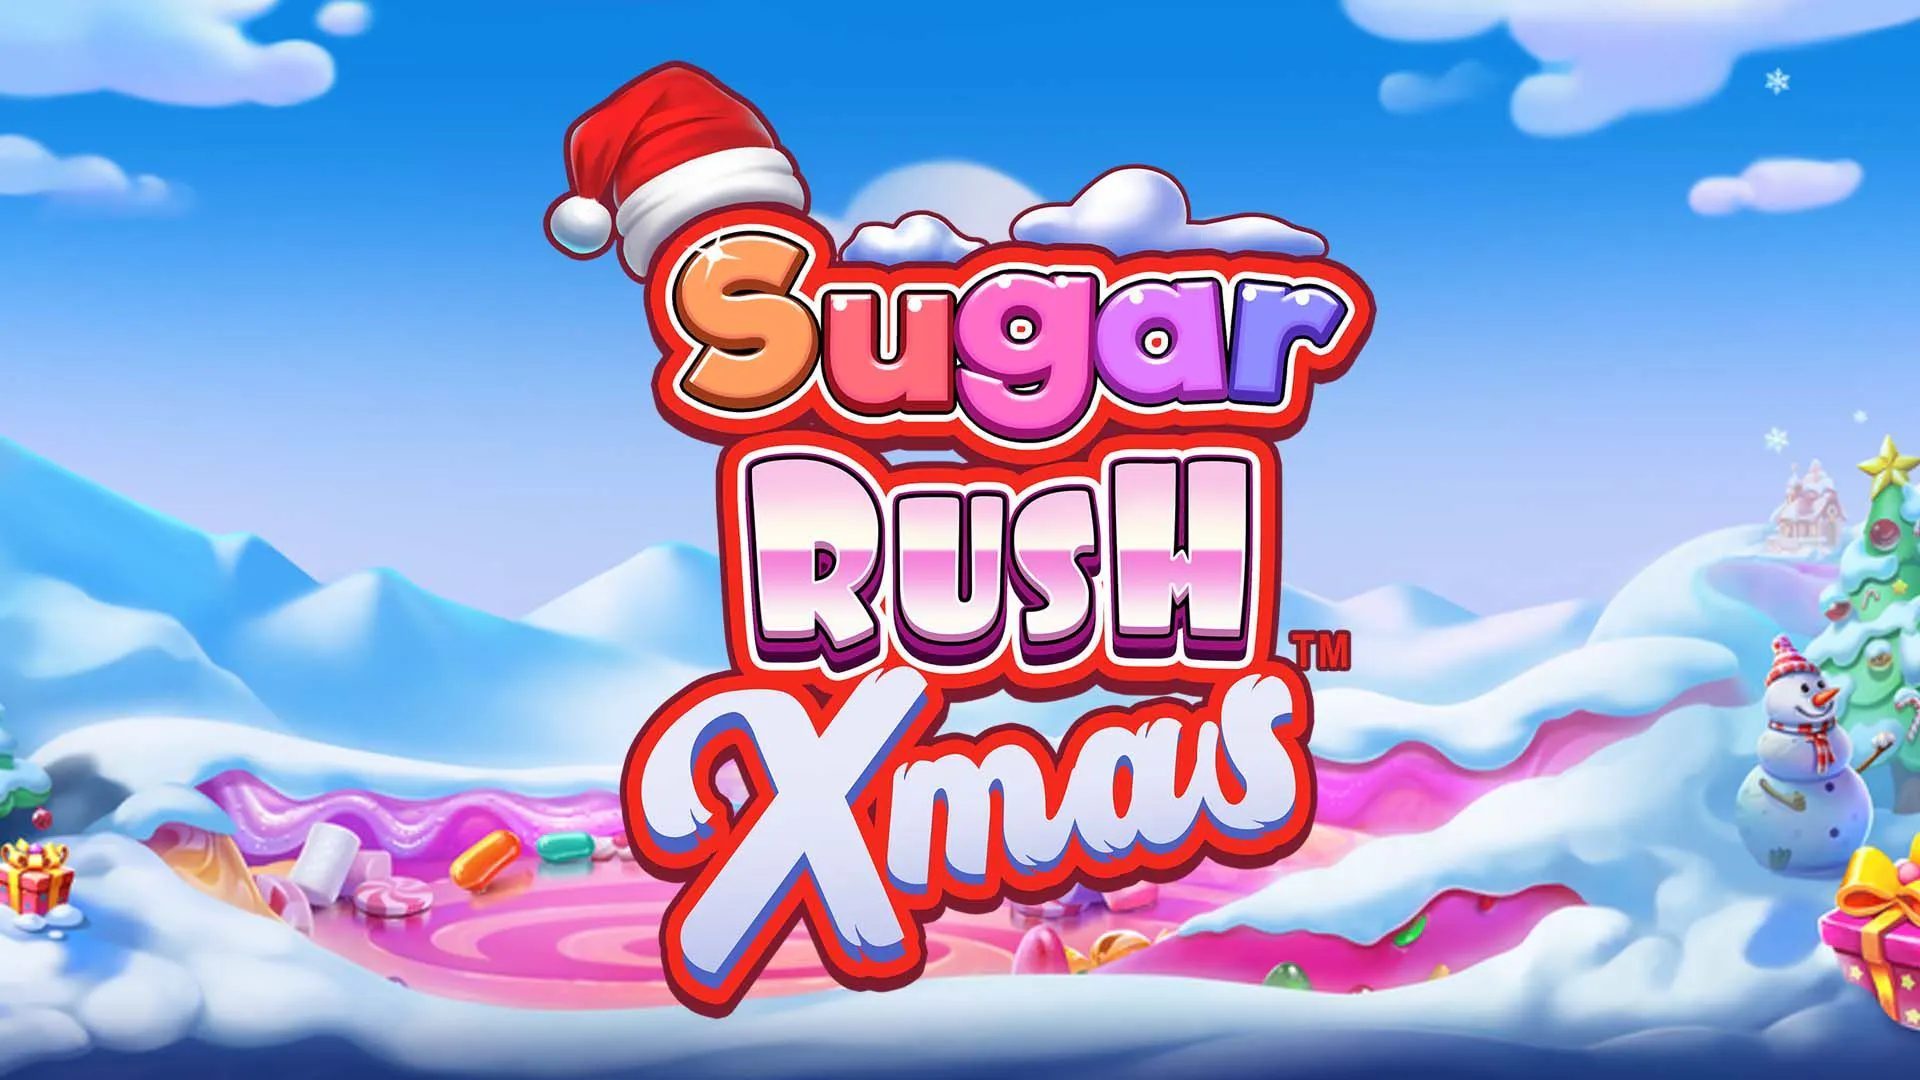 Sugar Rush Xmas Slot by Pragmatic Play Logo